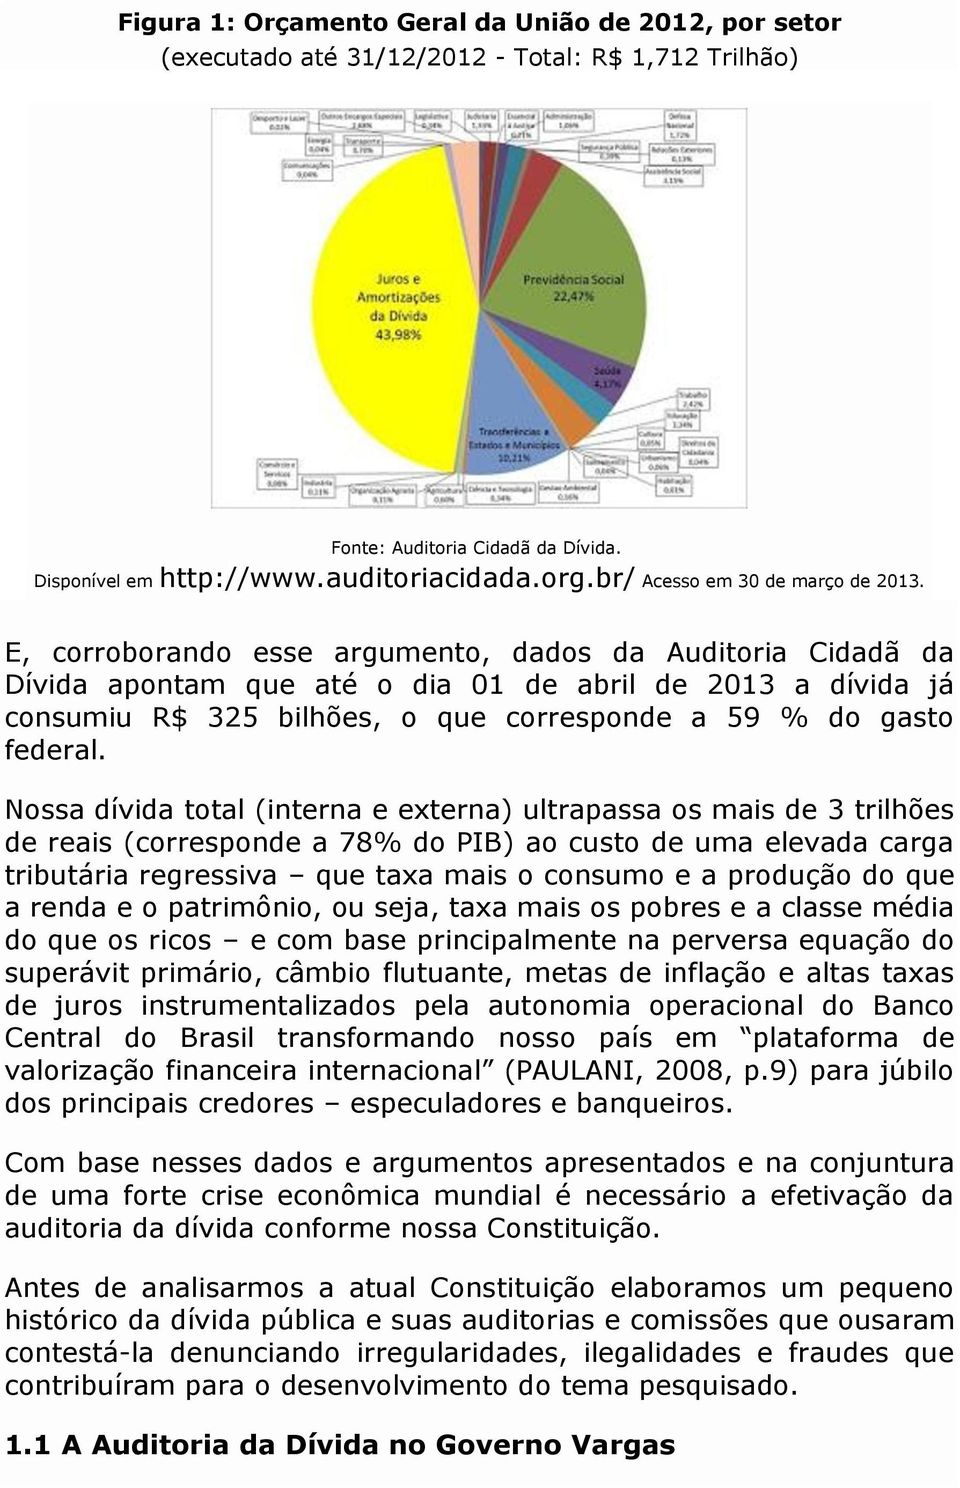 E, corroborando esse argumento, dados da Auditoria Cidadã da Dívida apontam que até o dia 01 de abril de 2013 a dívida já consumiu R$ 325 bilhões, o que corresponde a 59 % do gasto federal.